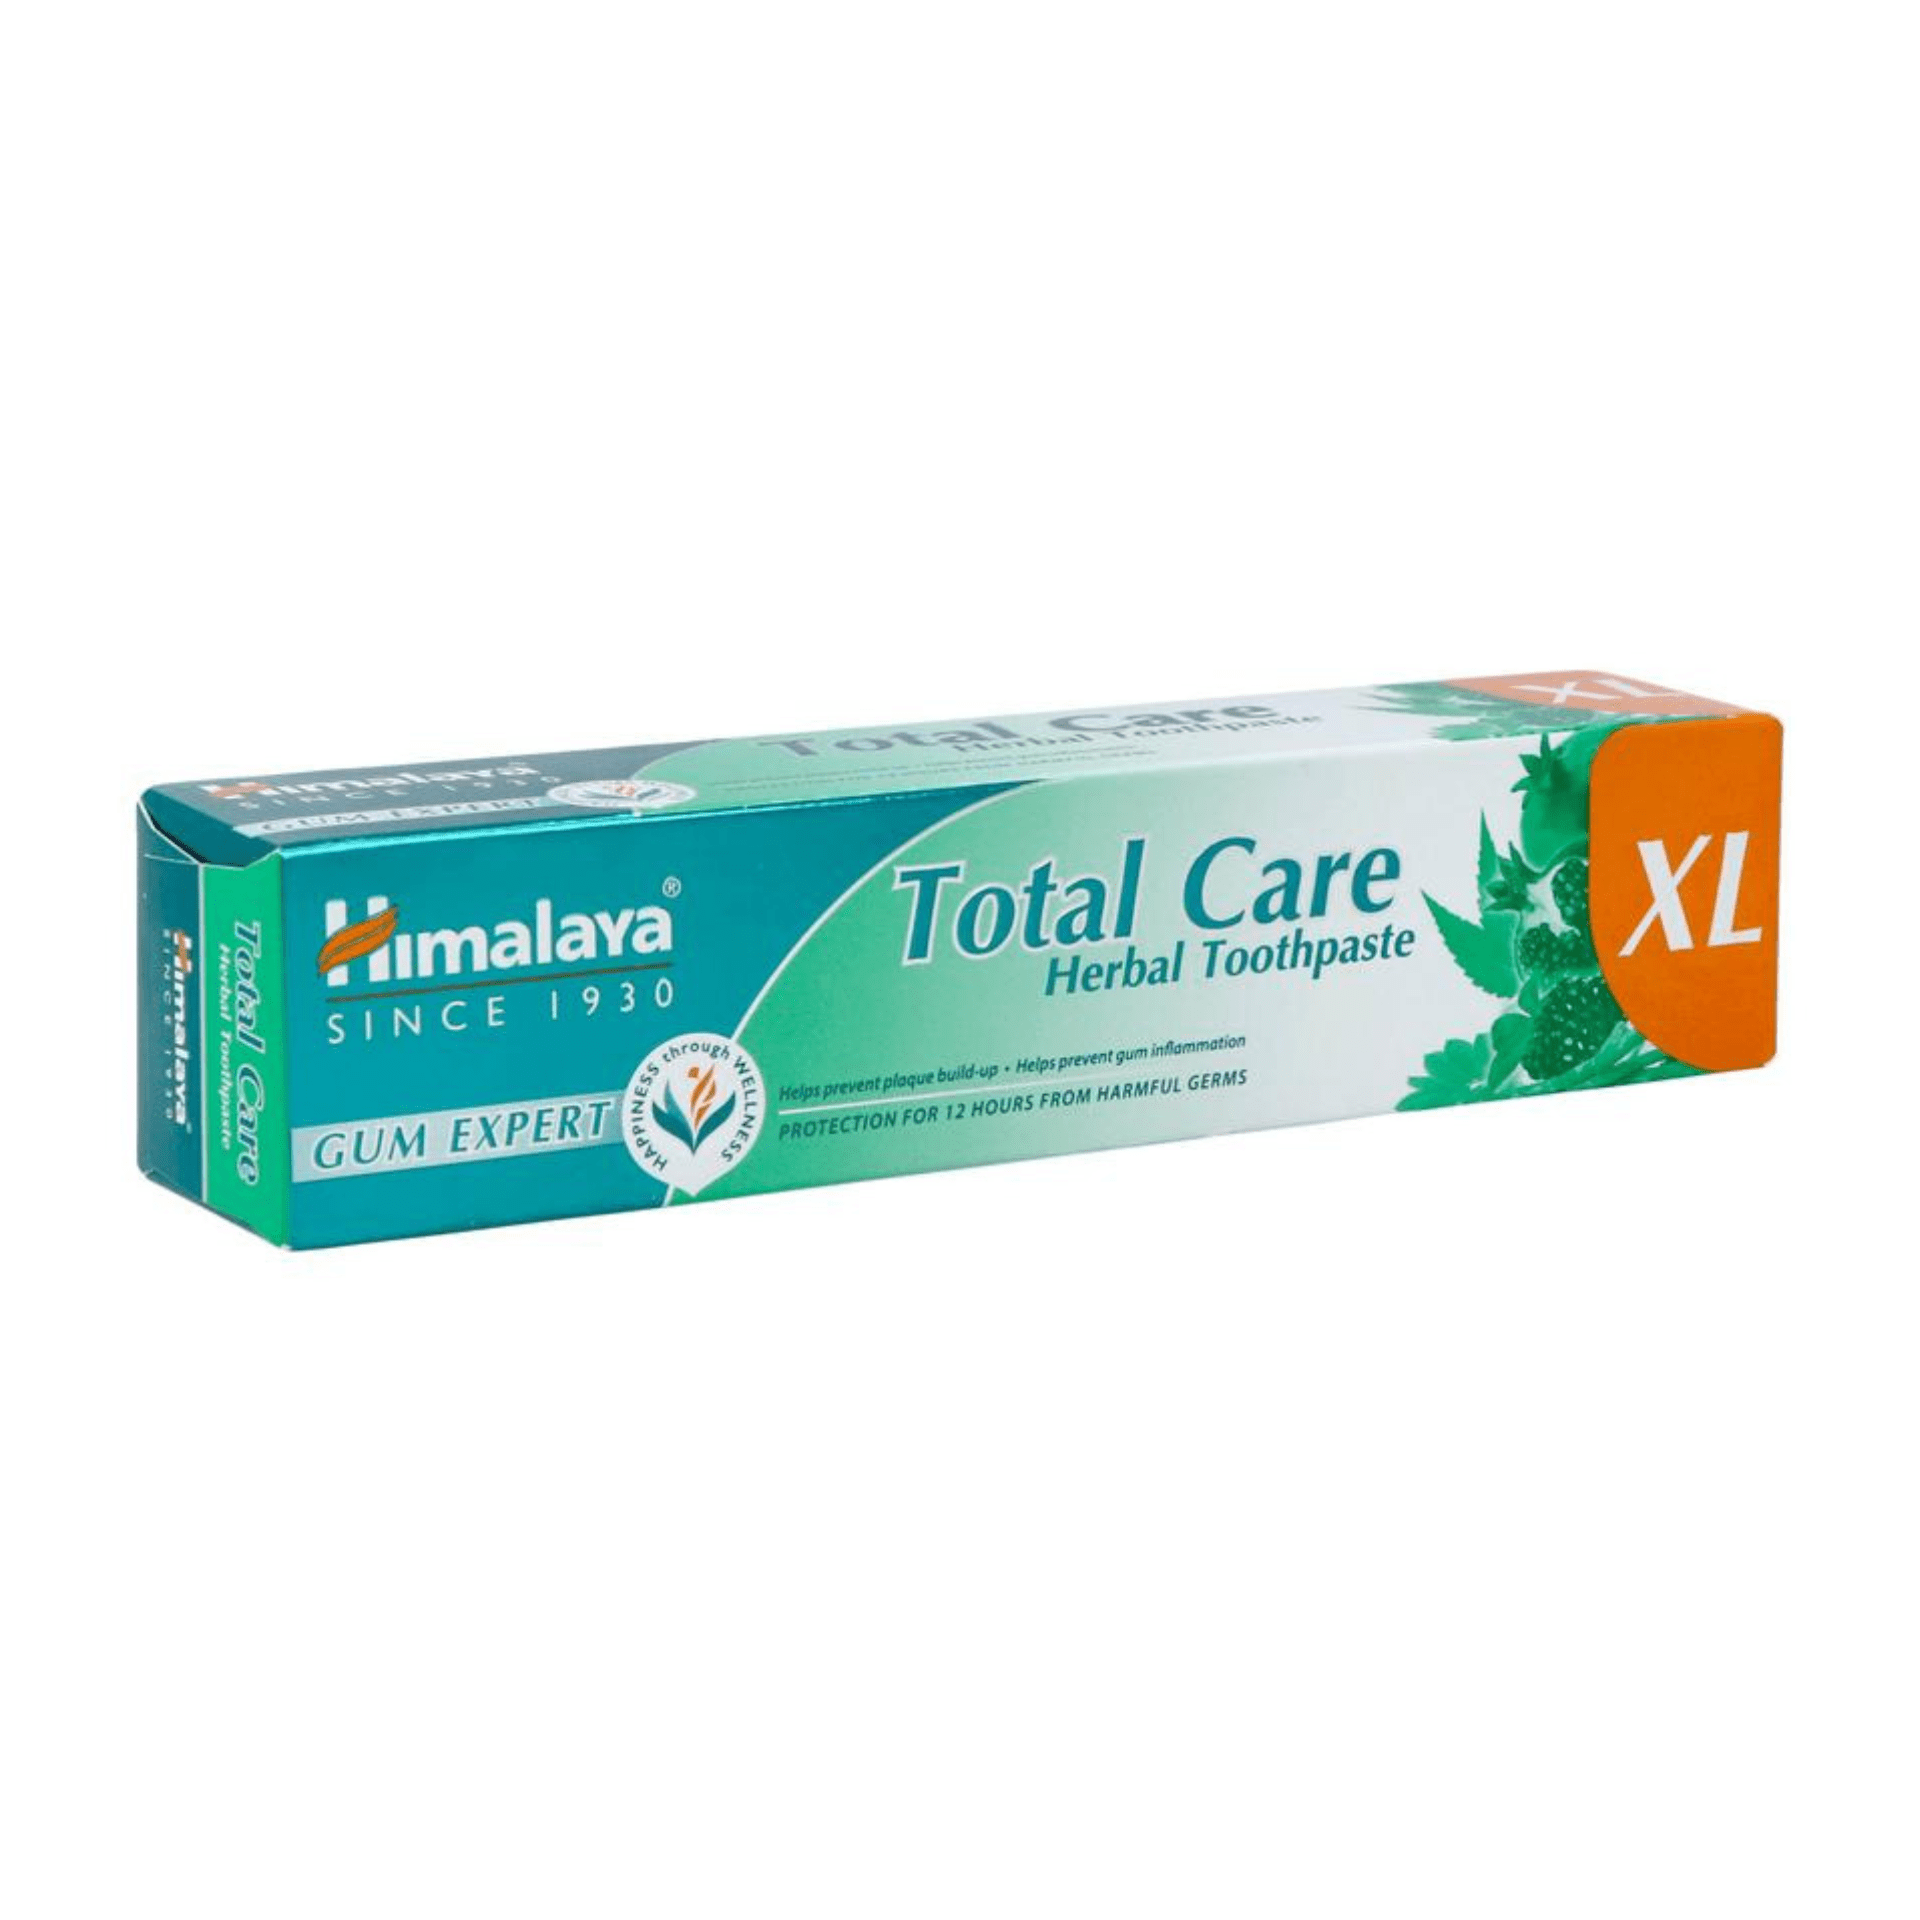 Himalaya Gum Expert Total Care XL